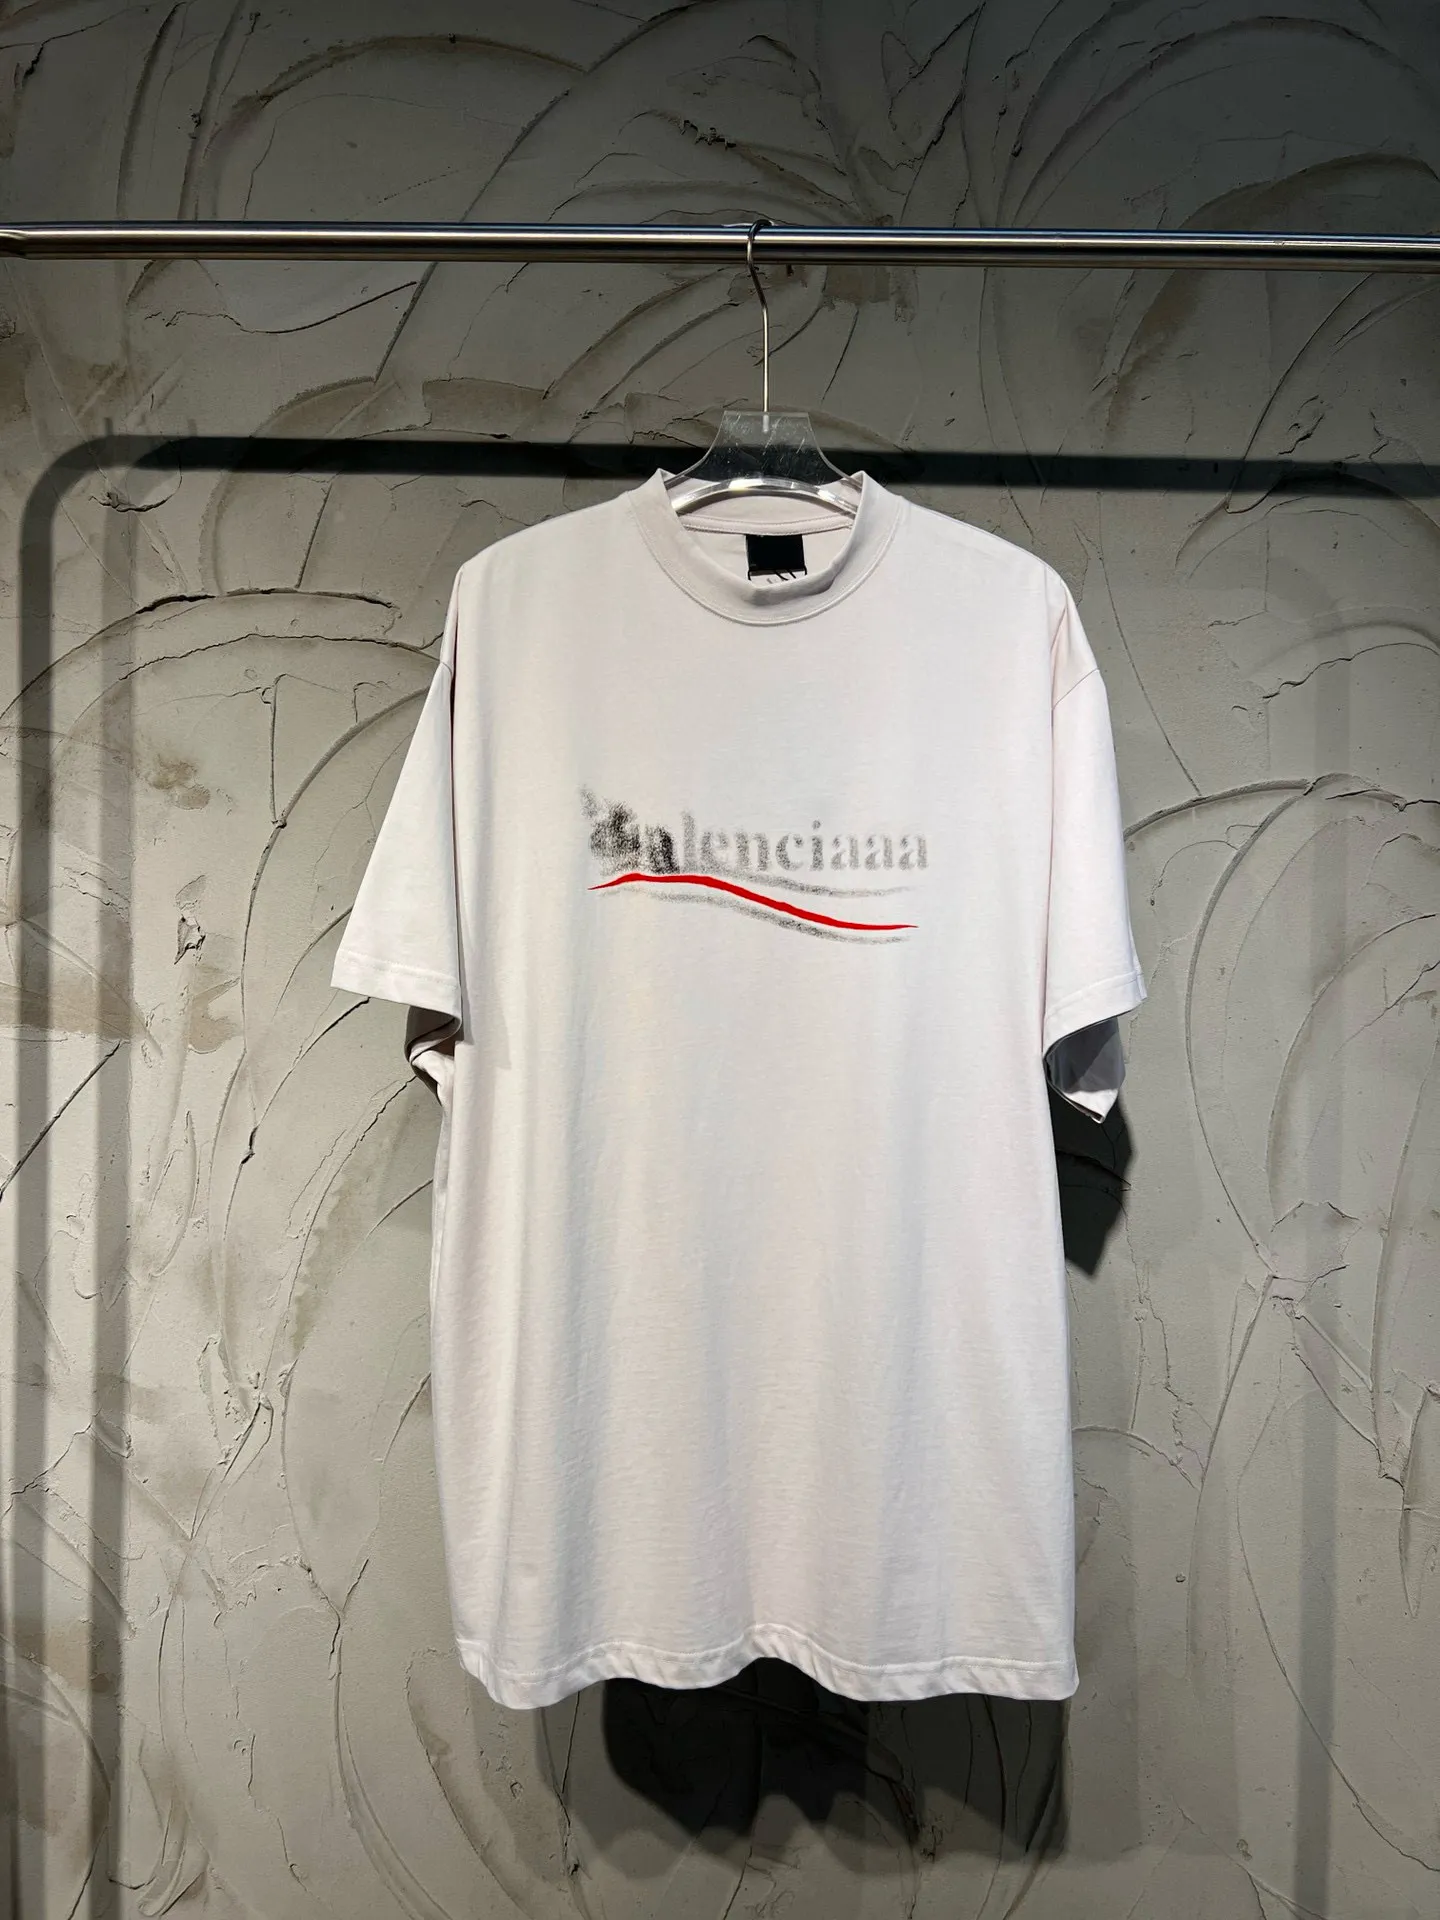 Herren-Plus-T-Shirts, Polos, runde T-Shirts, Halsausschnitt, bestickt und bedruckt, Sommermode im Polar-Stil mit reiner Street-Baumwolle 3221d